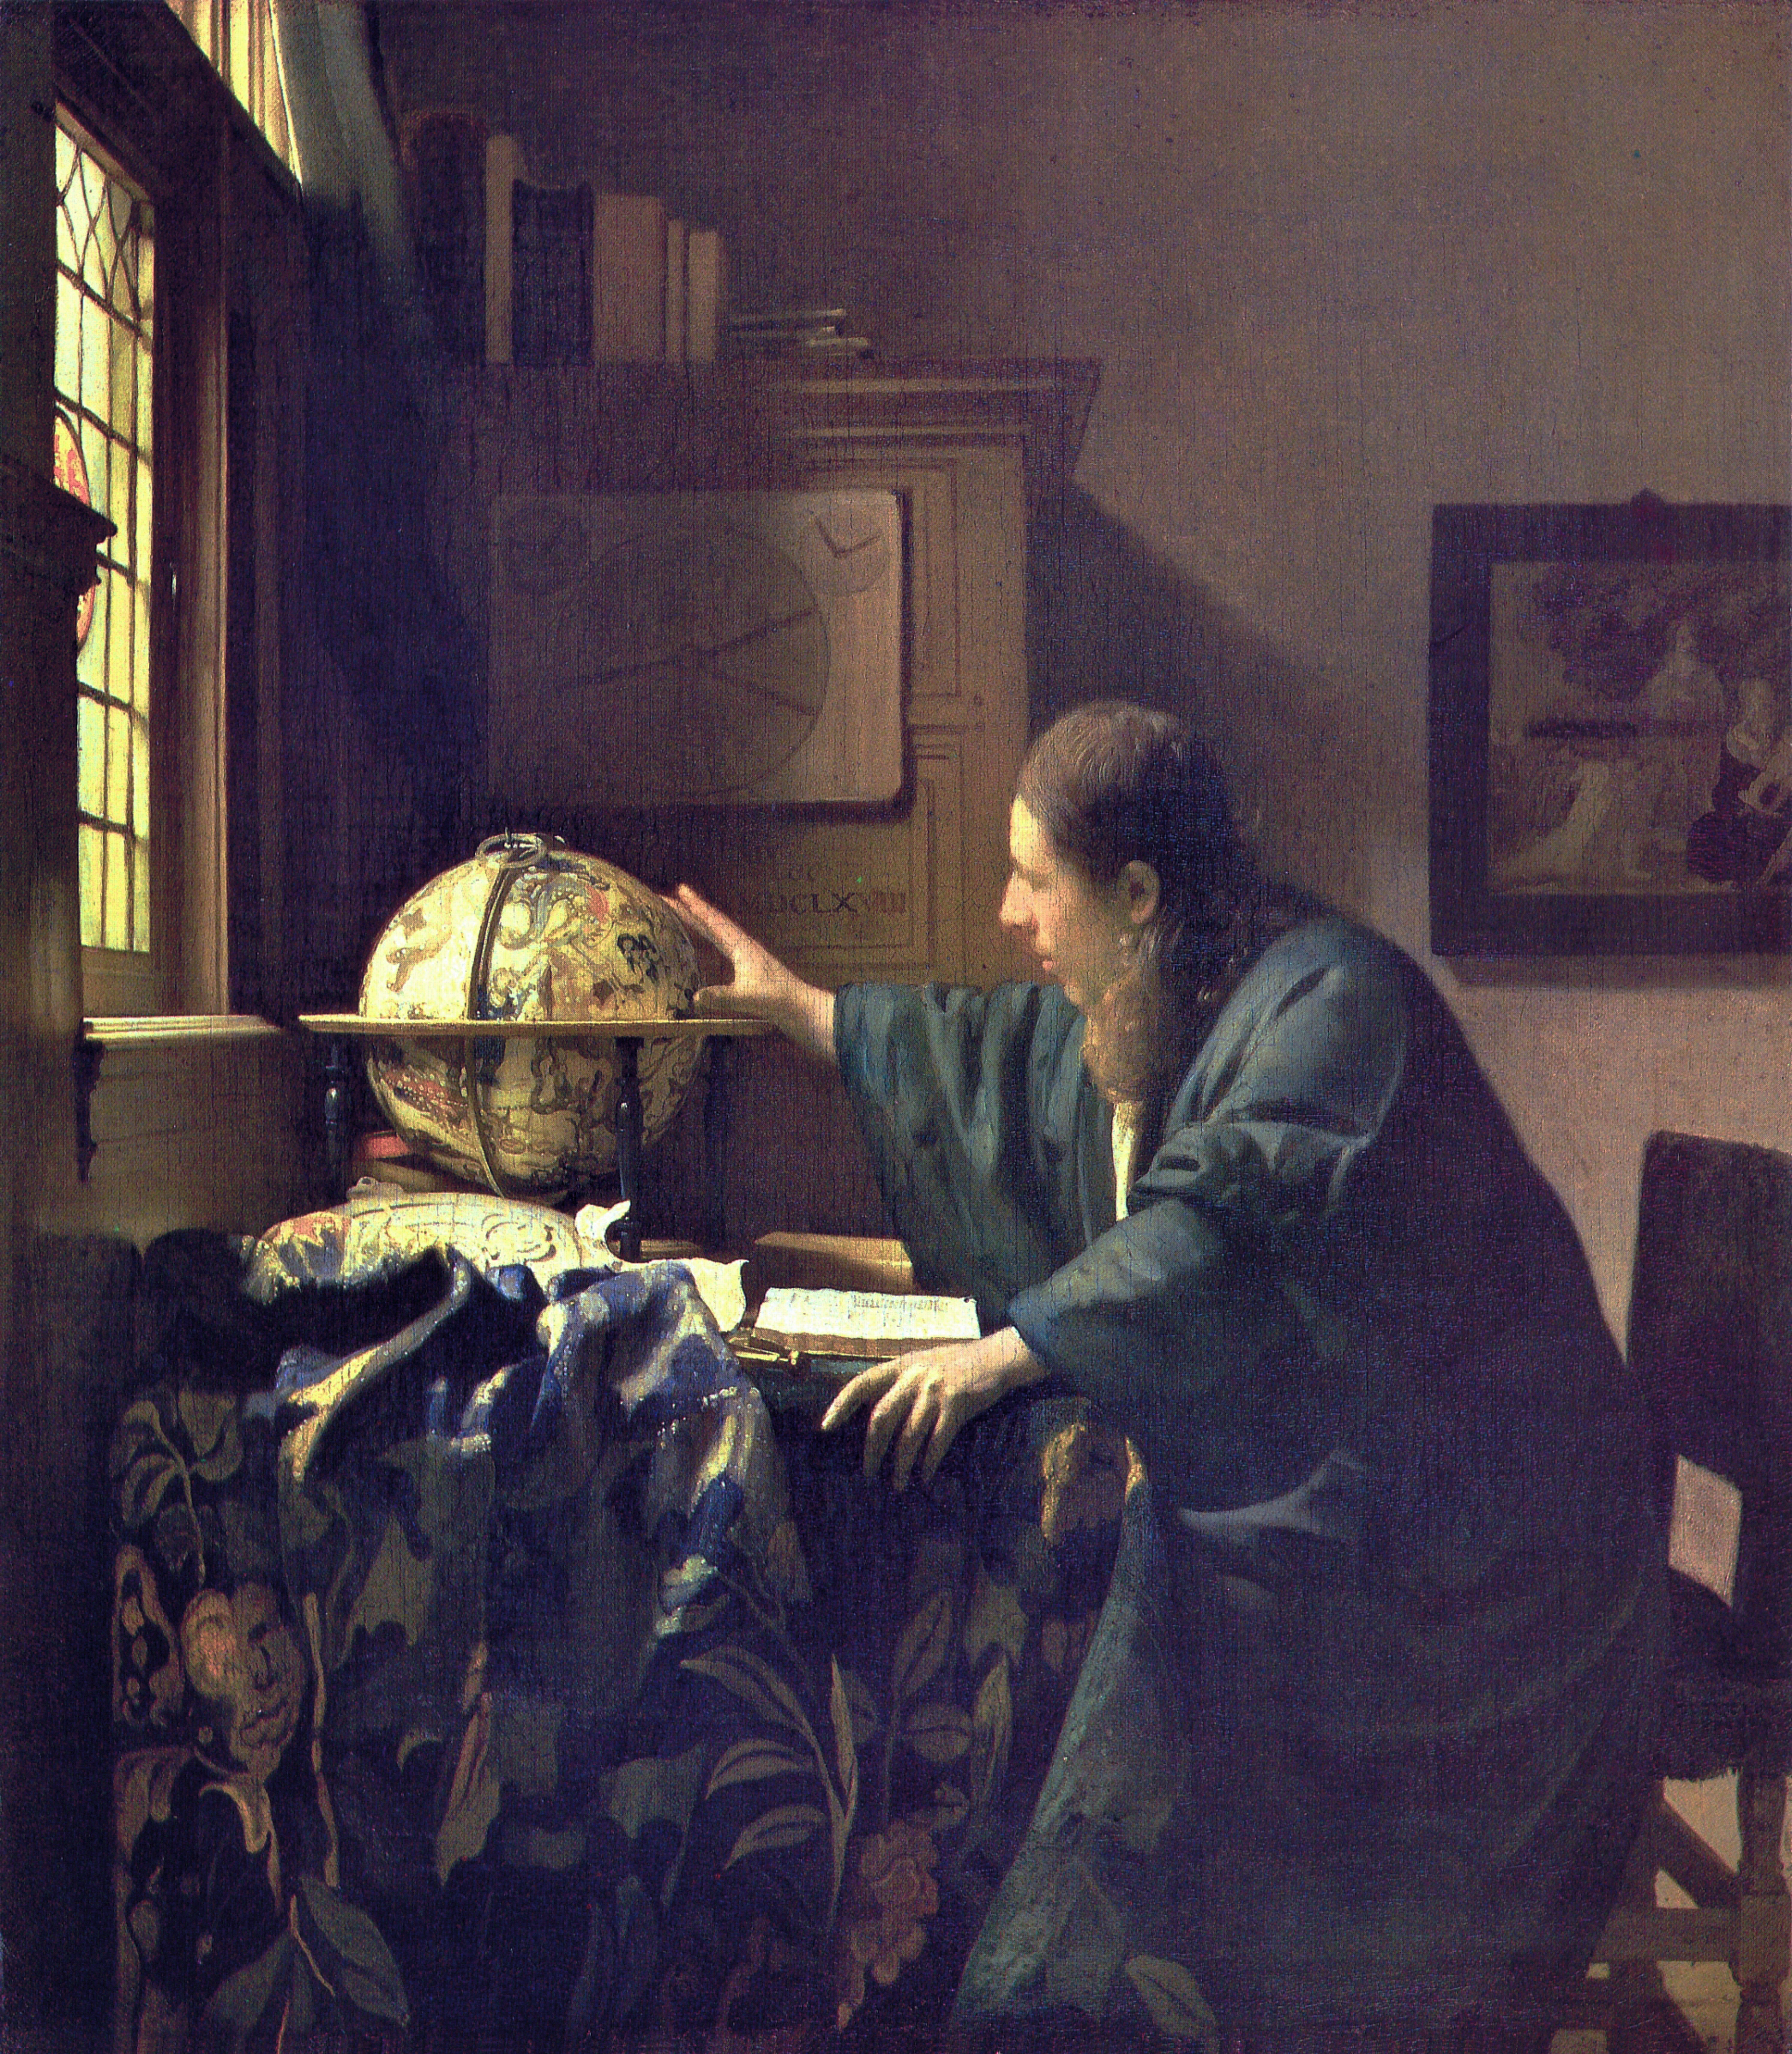 VERMEER “L’Astronome ou plutôt L’Astrologue” (1668)